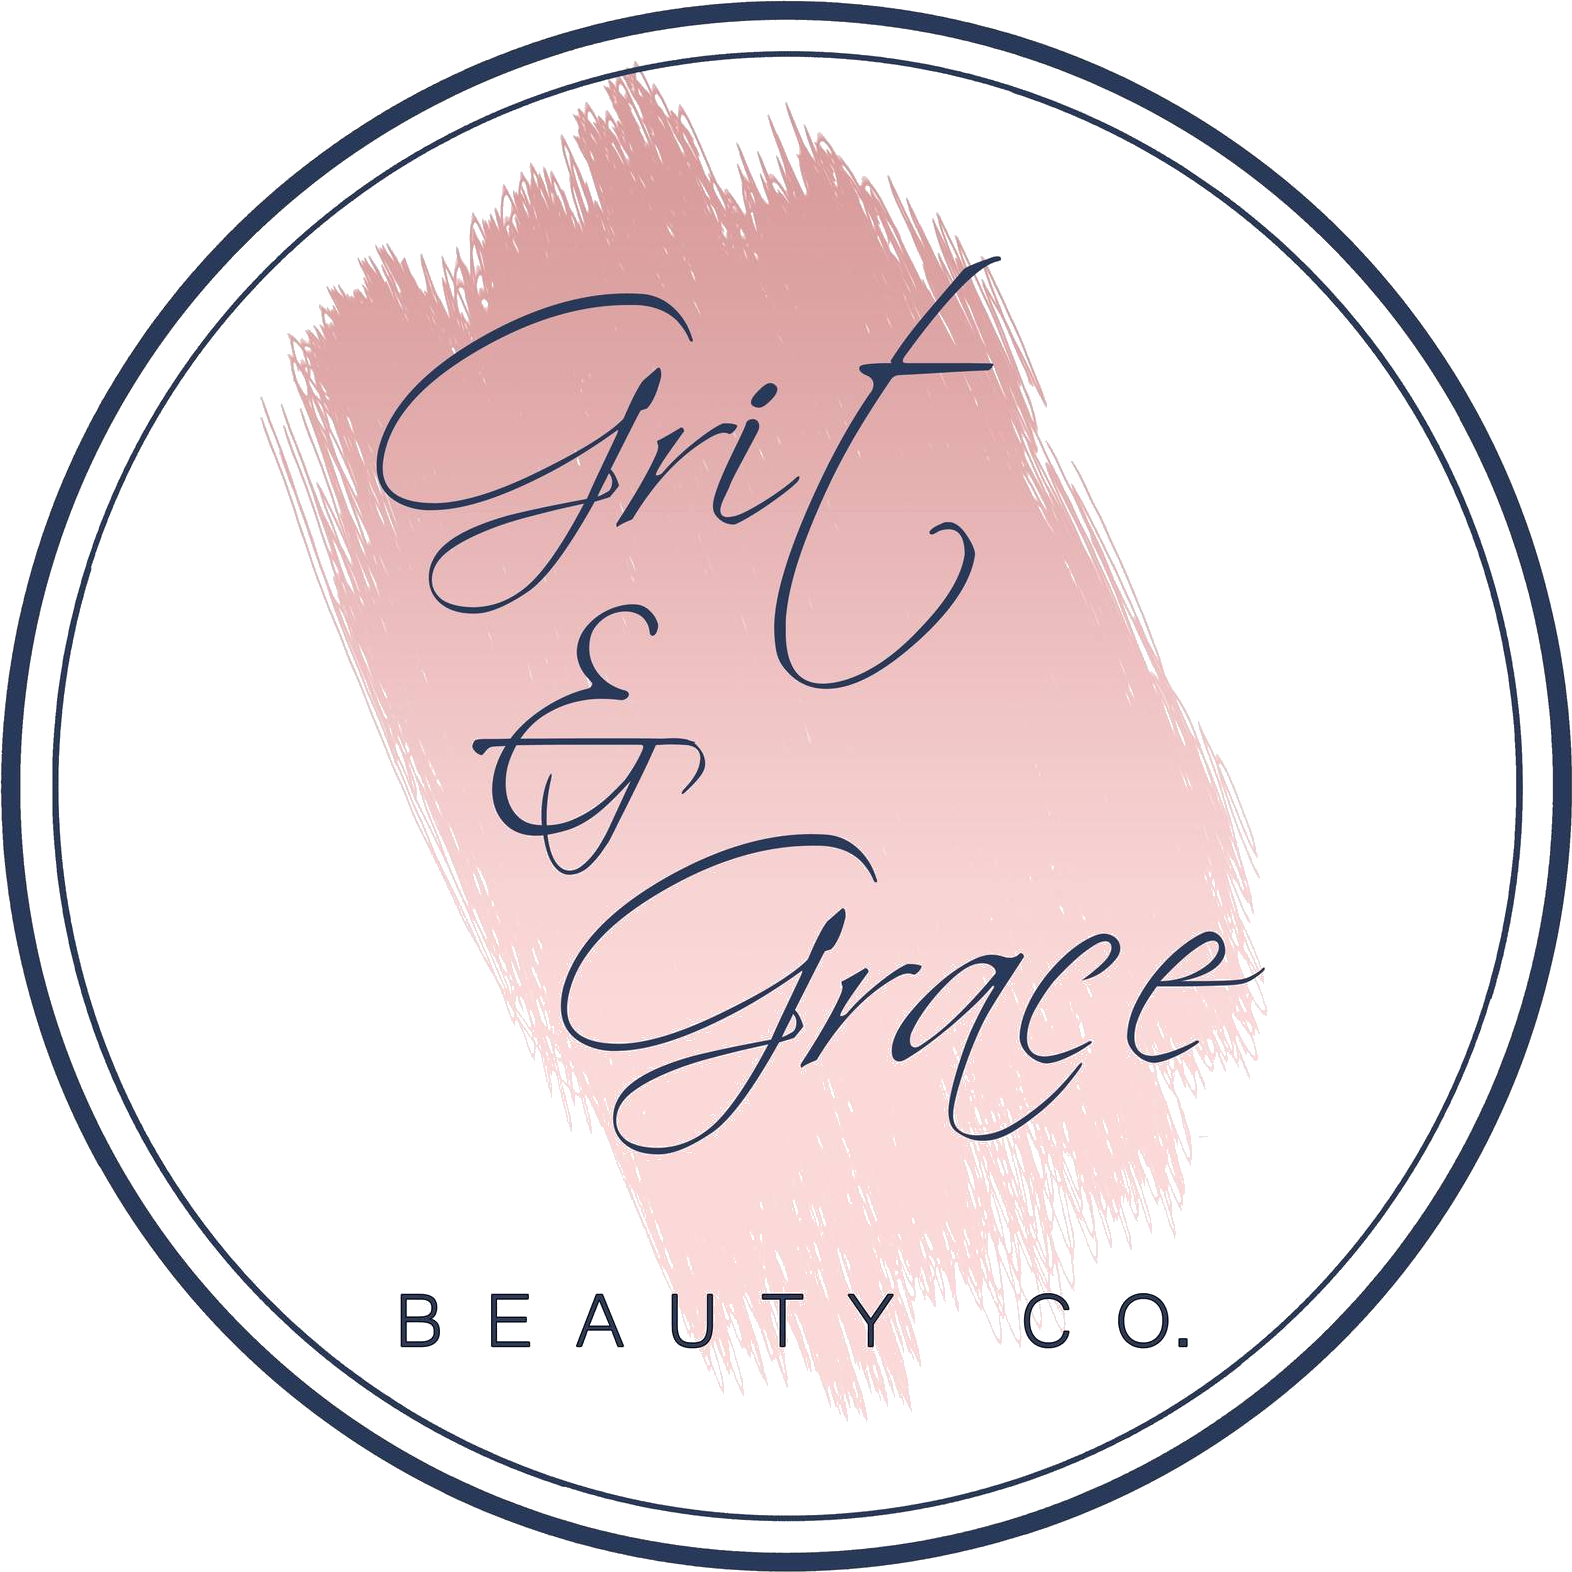 Grit & Grace Beauty Co. Logo